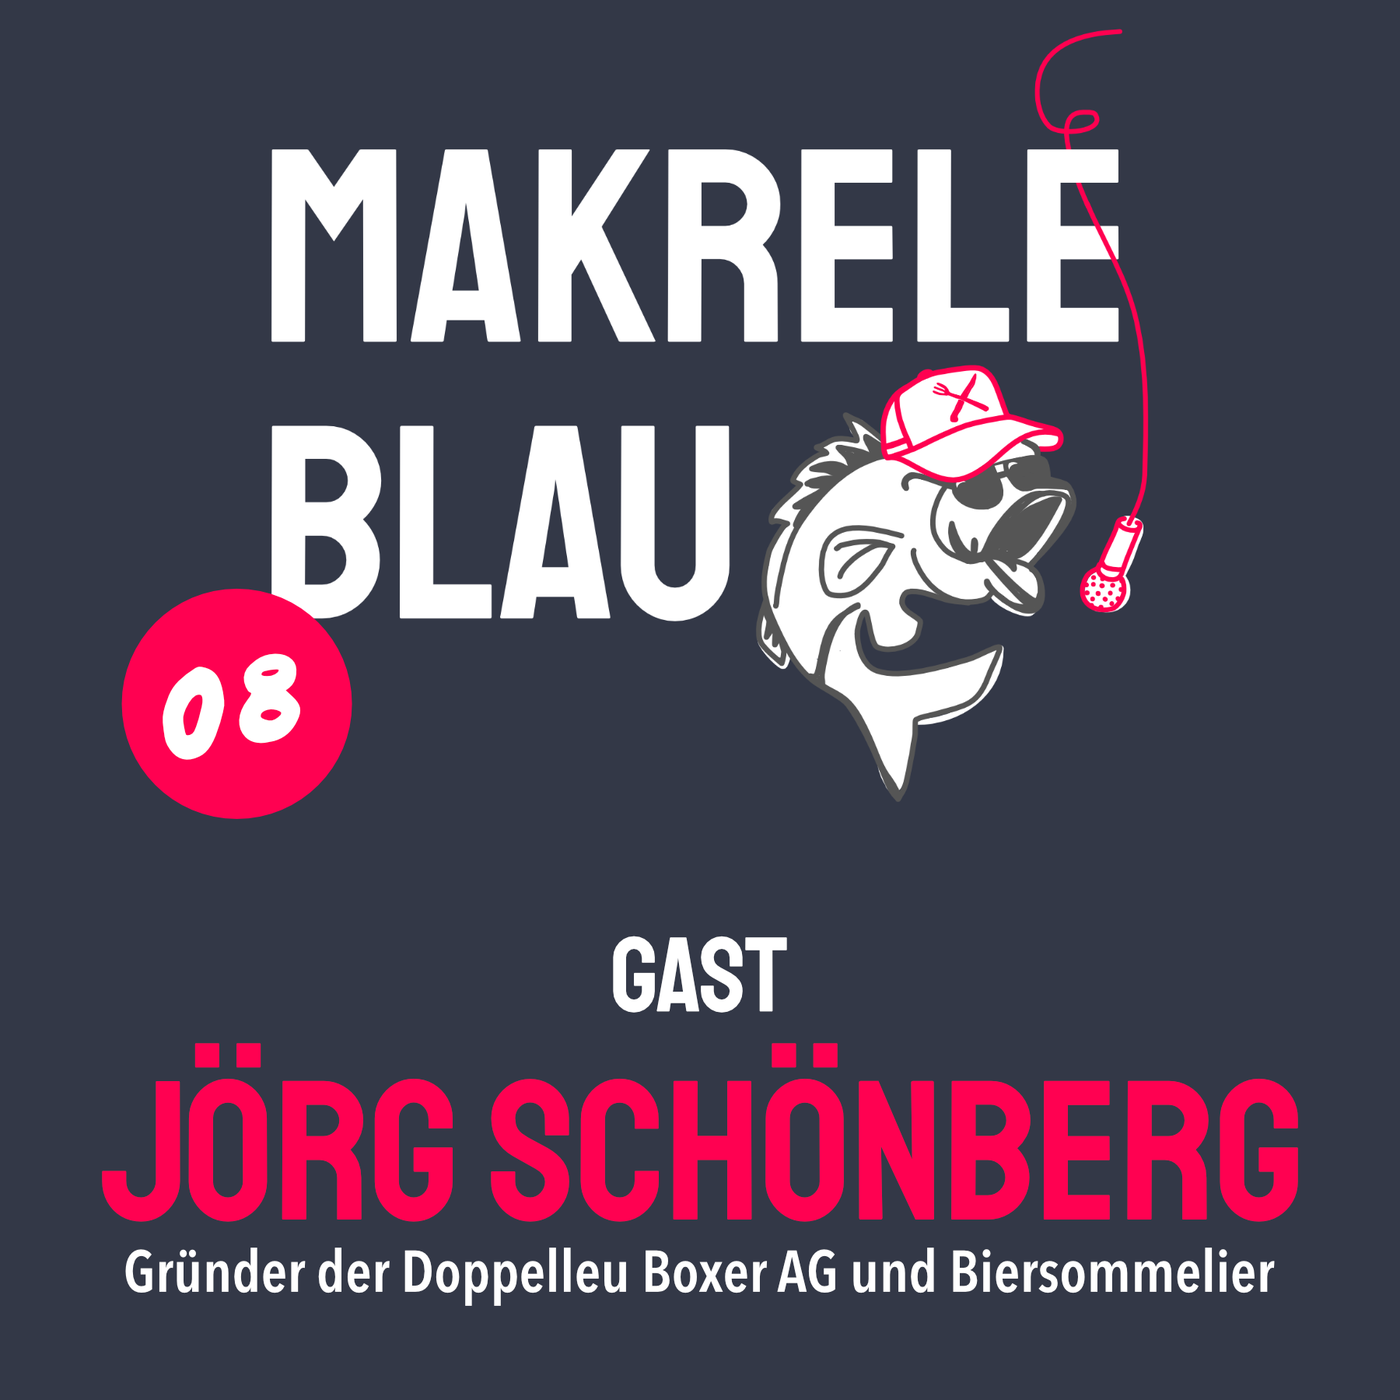 Makrele Blau #08 – ZISCH, KLACK & WEG, mit em Jörg Schönberg